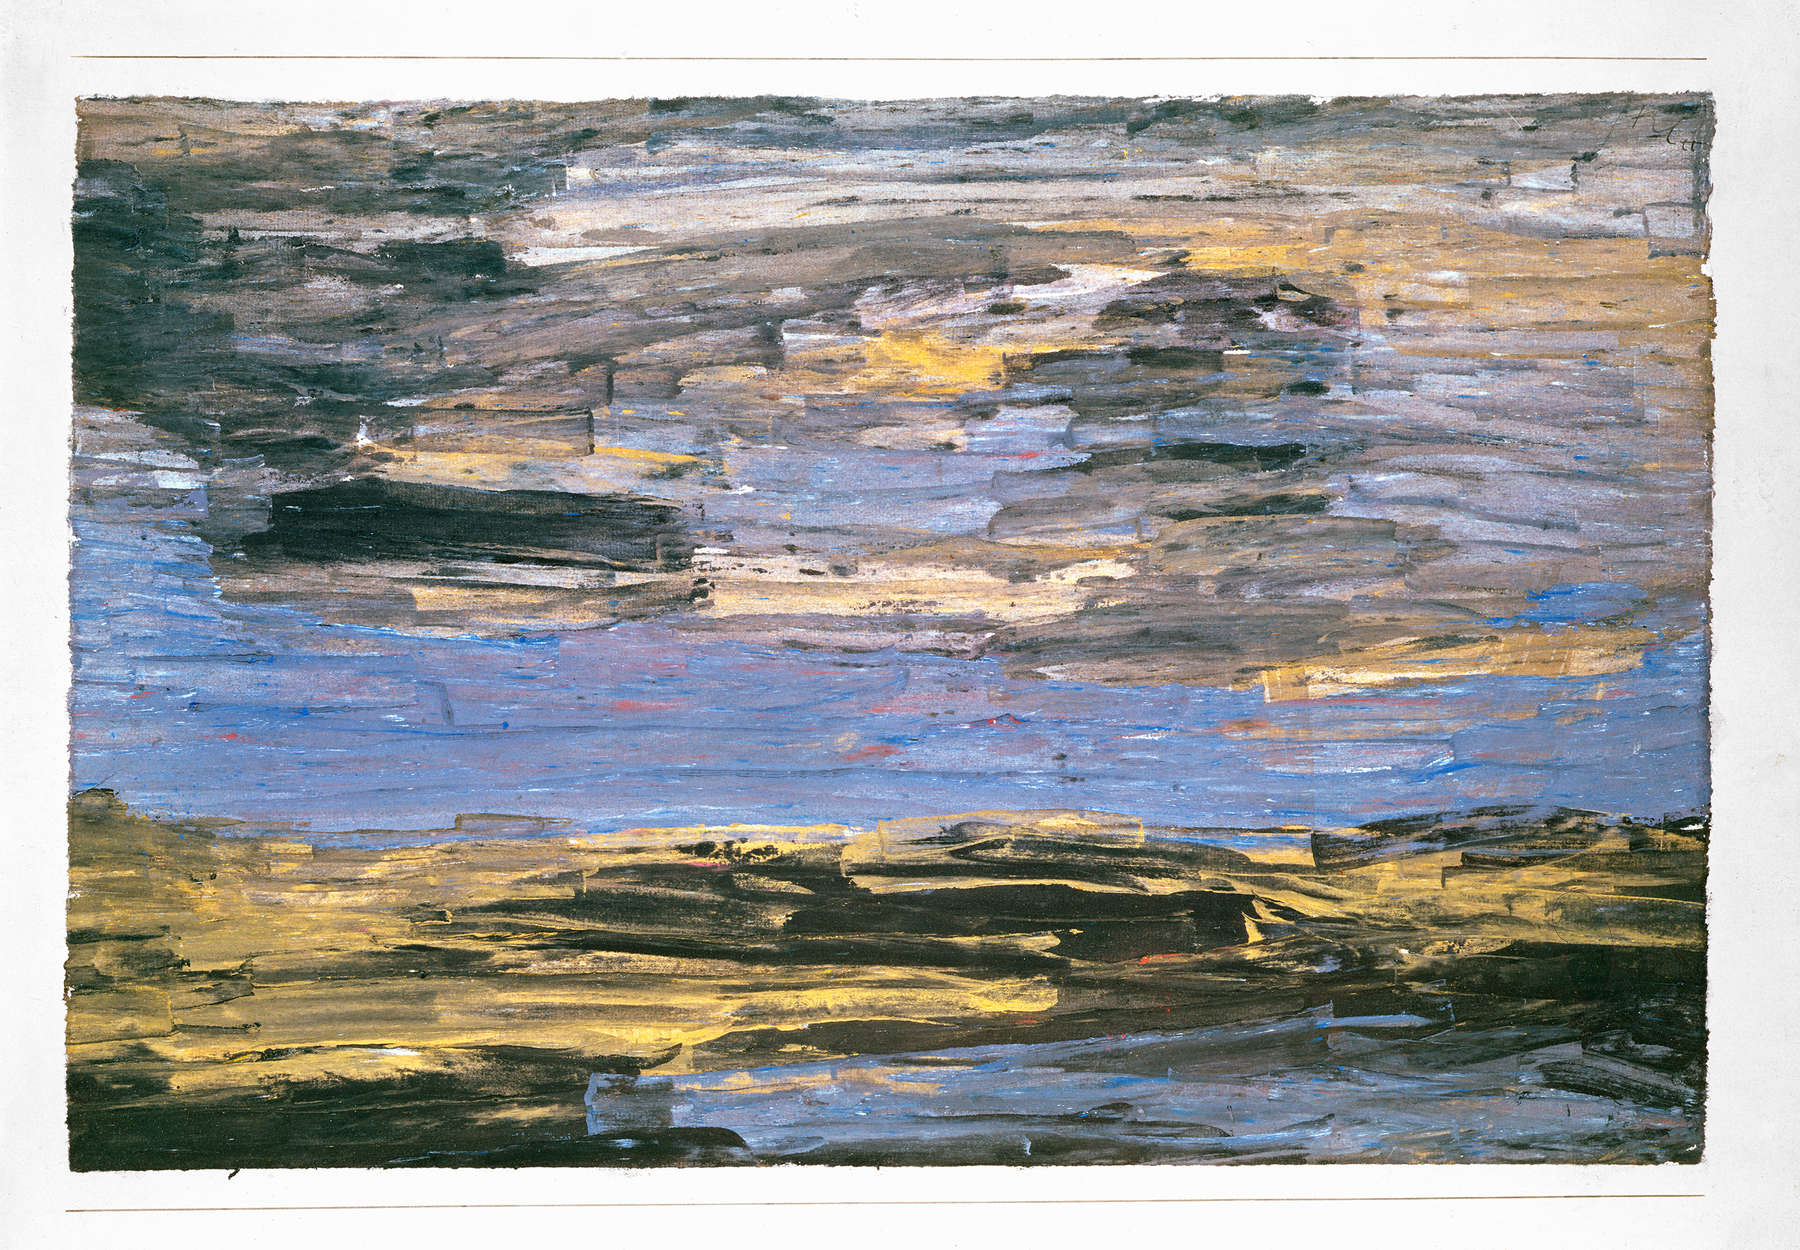             Papier peint panoramique "Tempête sur la plaine" de Paul Klee
        